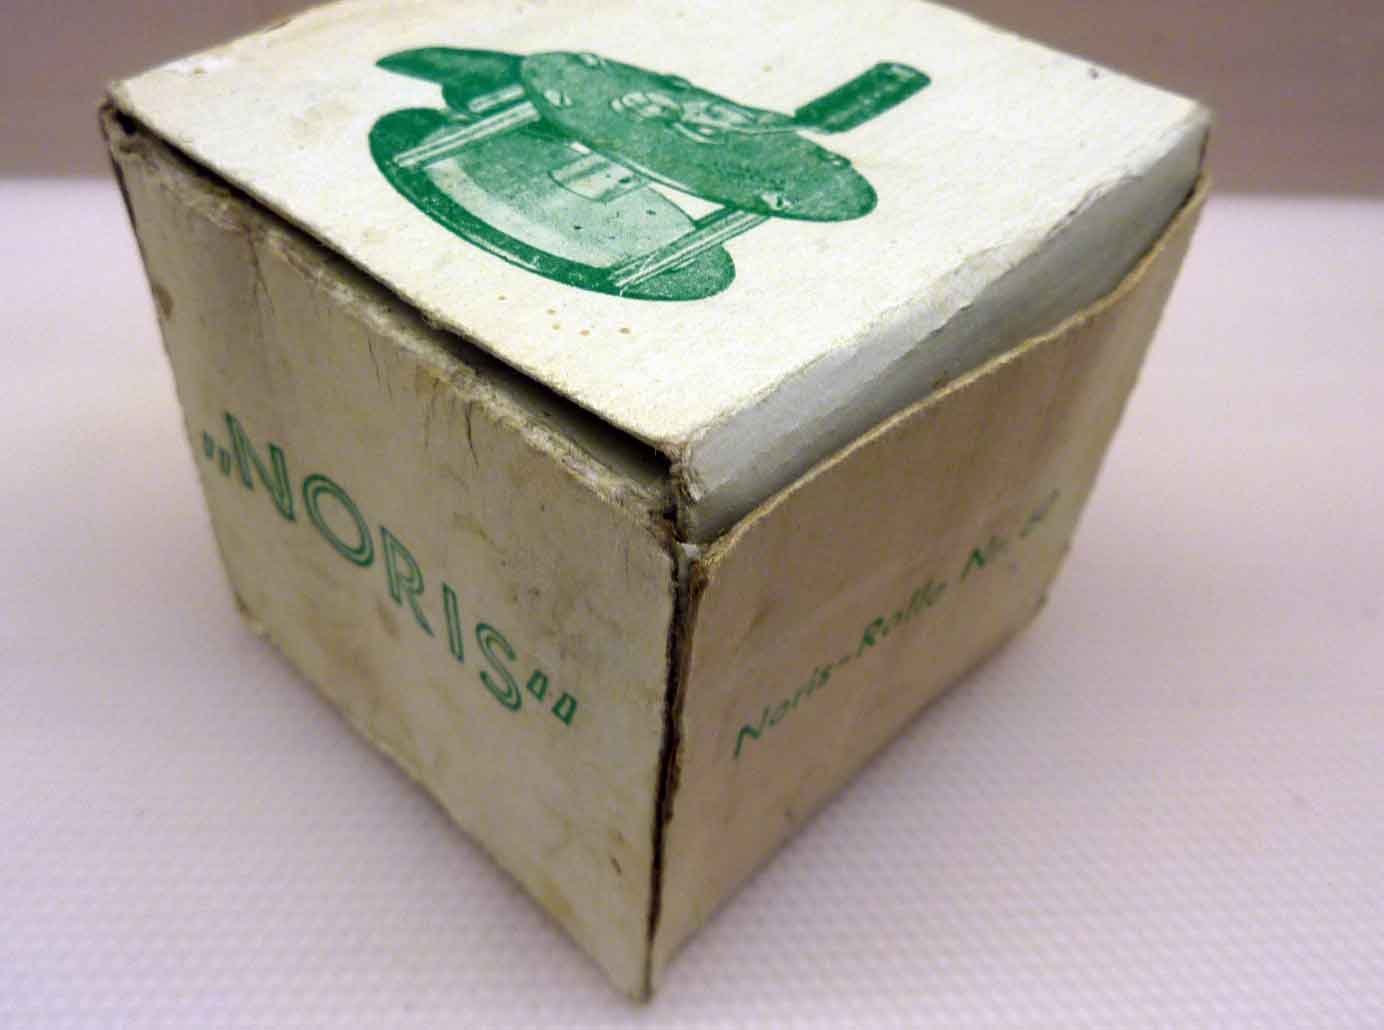 Karton der Noris Liliput, schon dem Namen nach die kleinste Rolle des Nürnberger Herstellers.